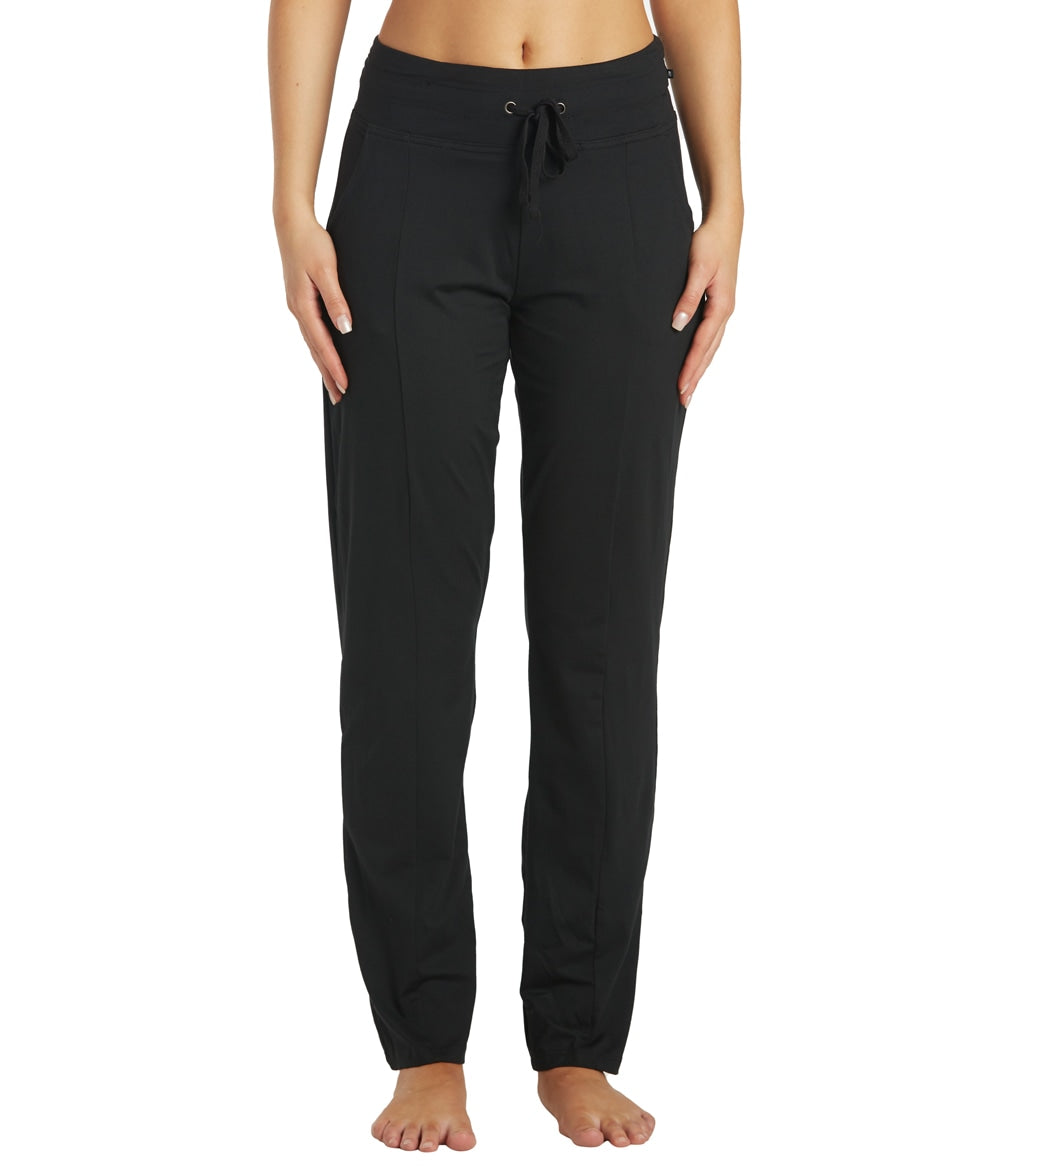 Marika Mona Jogger Black Full Length Sweatpants with Pockets